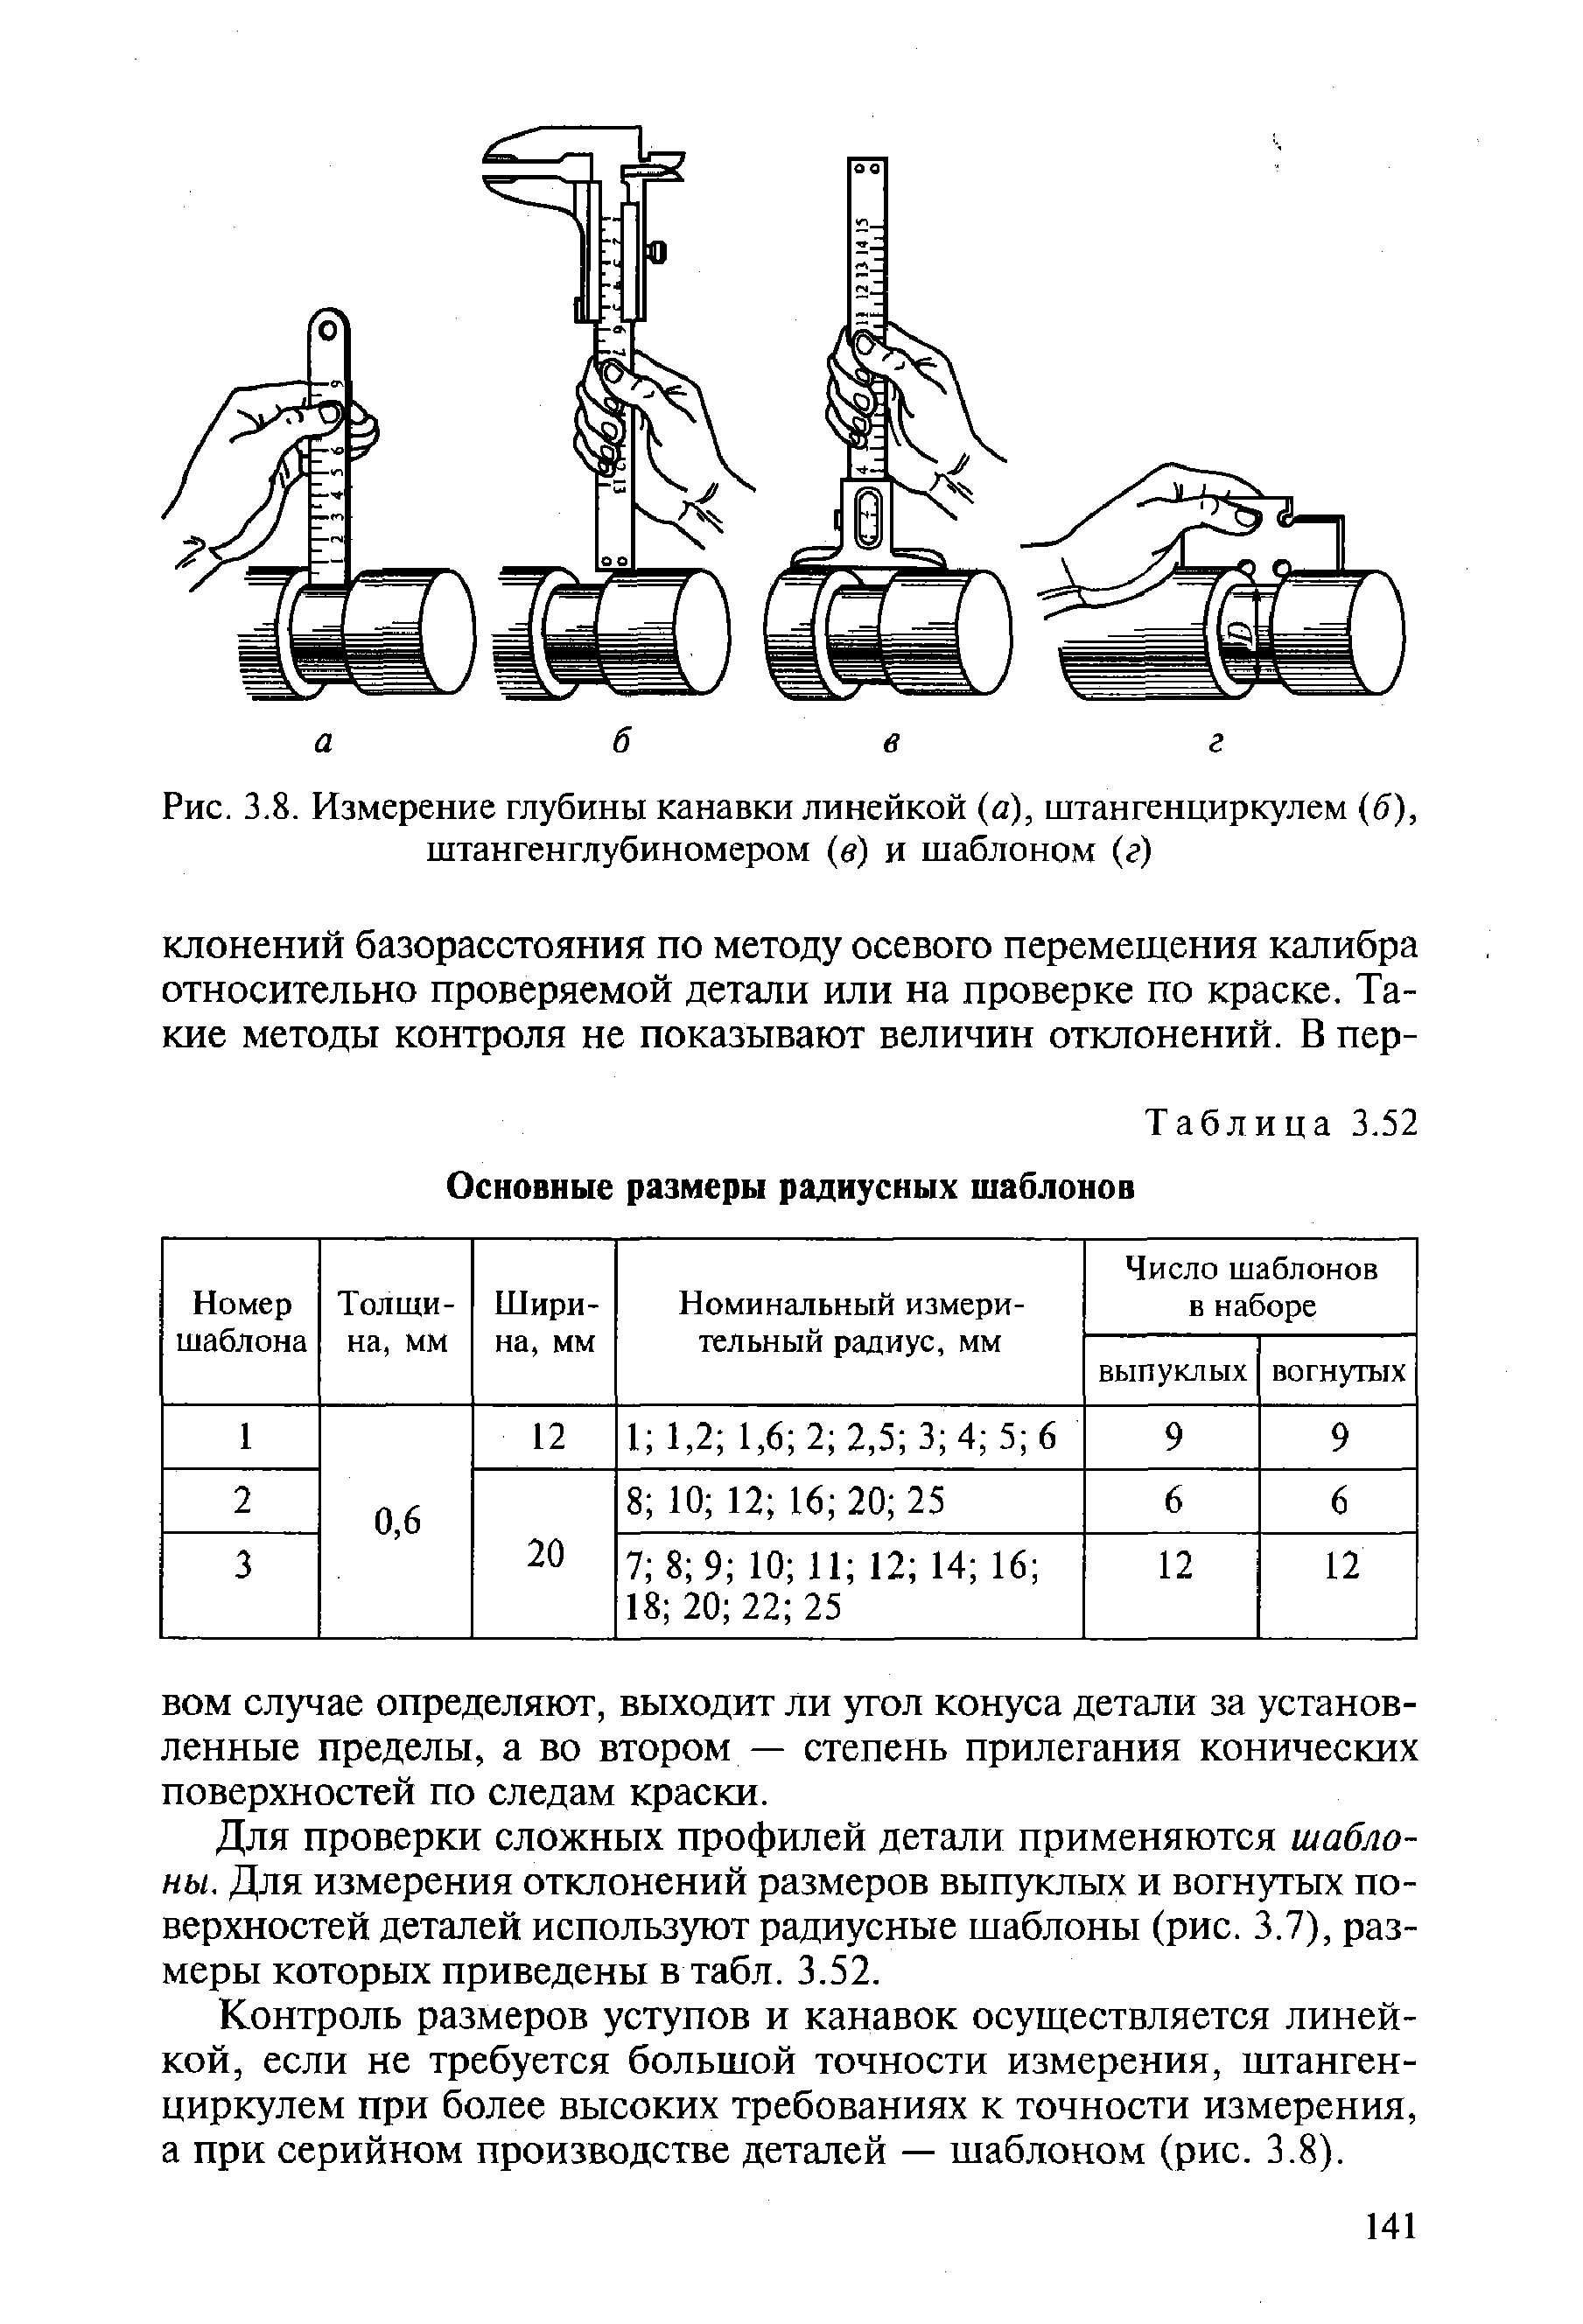 Рис. 3.8. Измерение глубины канавки линейкой (а), штангенциркулем б), штангенглубиномером в) и шаблоном (г)
